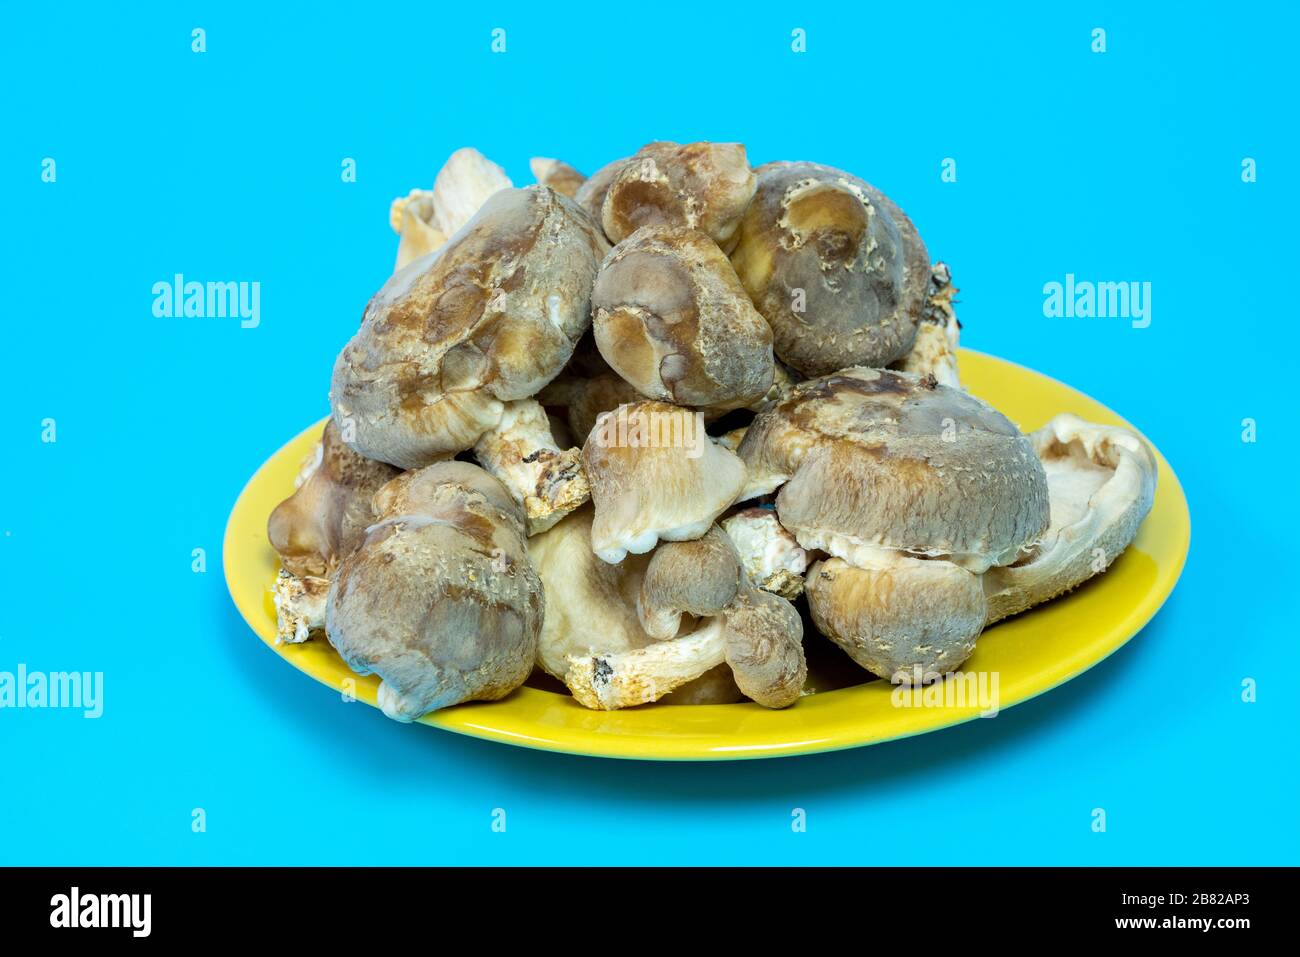 Funghi shiitake sul piatto. È considerato un fungo medicinale in alcune forme di medicina tradizionale Foto Stock